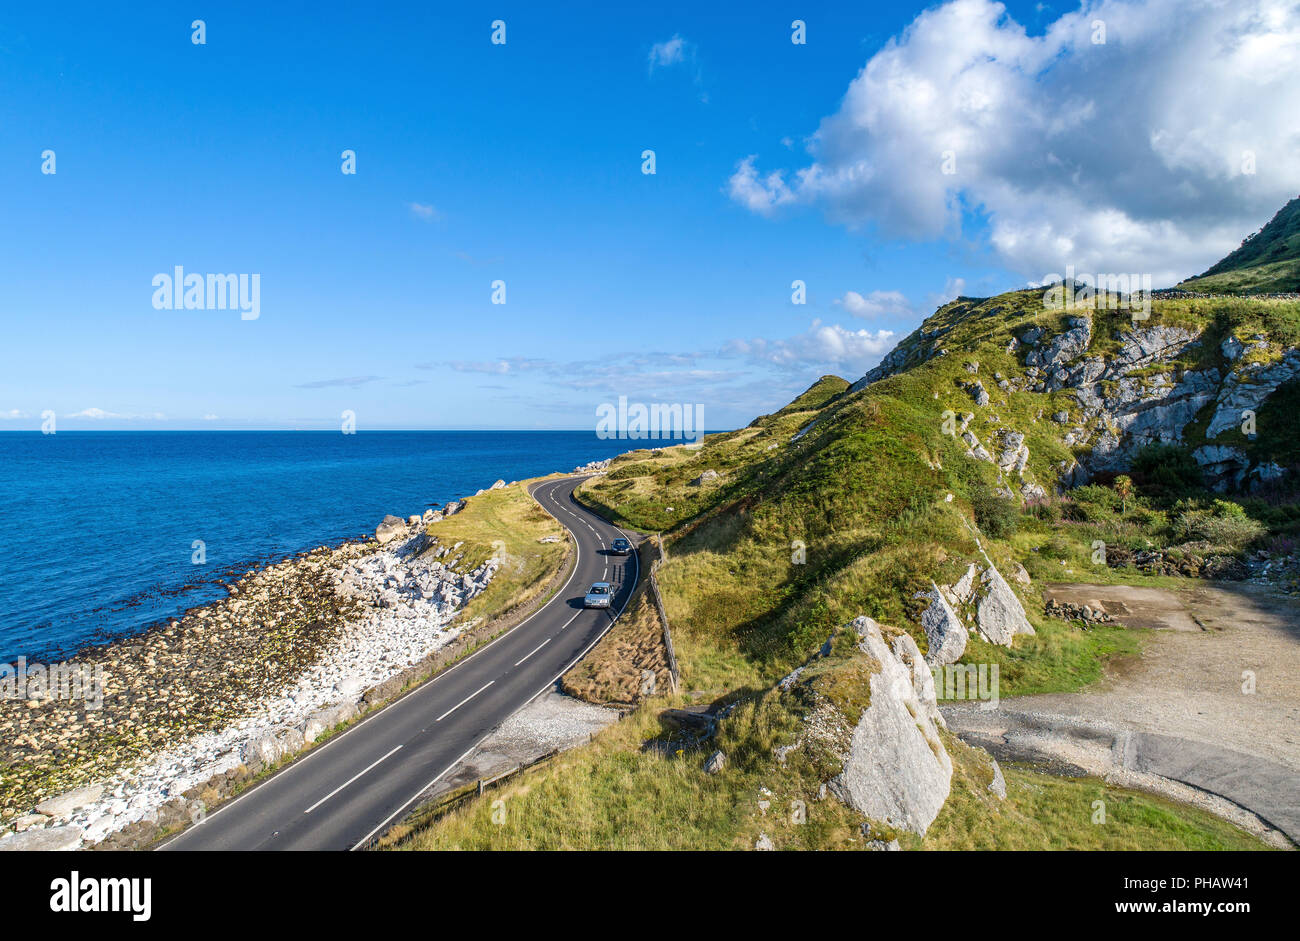 Causeway percorso costiero con vetture, a.k.a. Antrim strada costiera sulla costa orientale dell'Irlanda del Nord, Regno Unito. Foto Stock